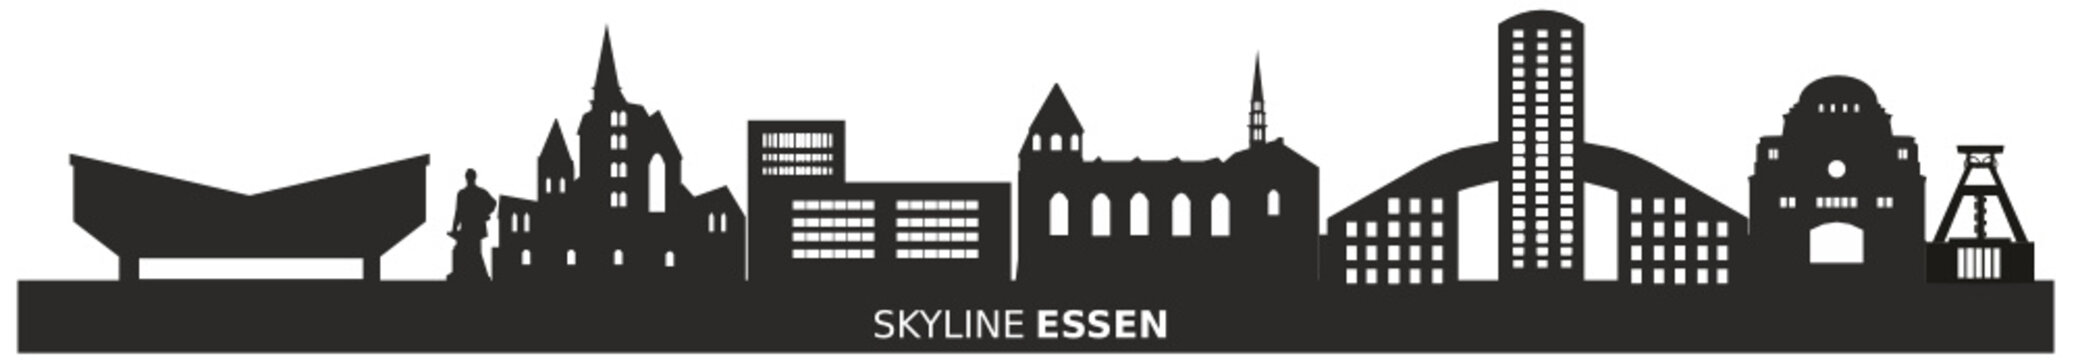 Skyline Essen